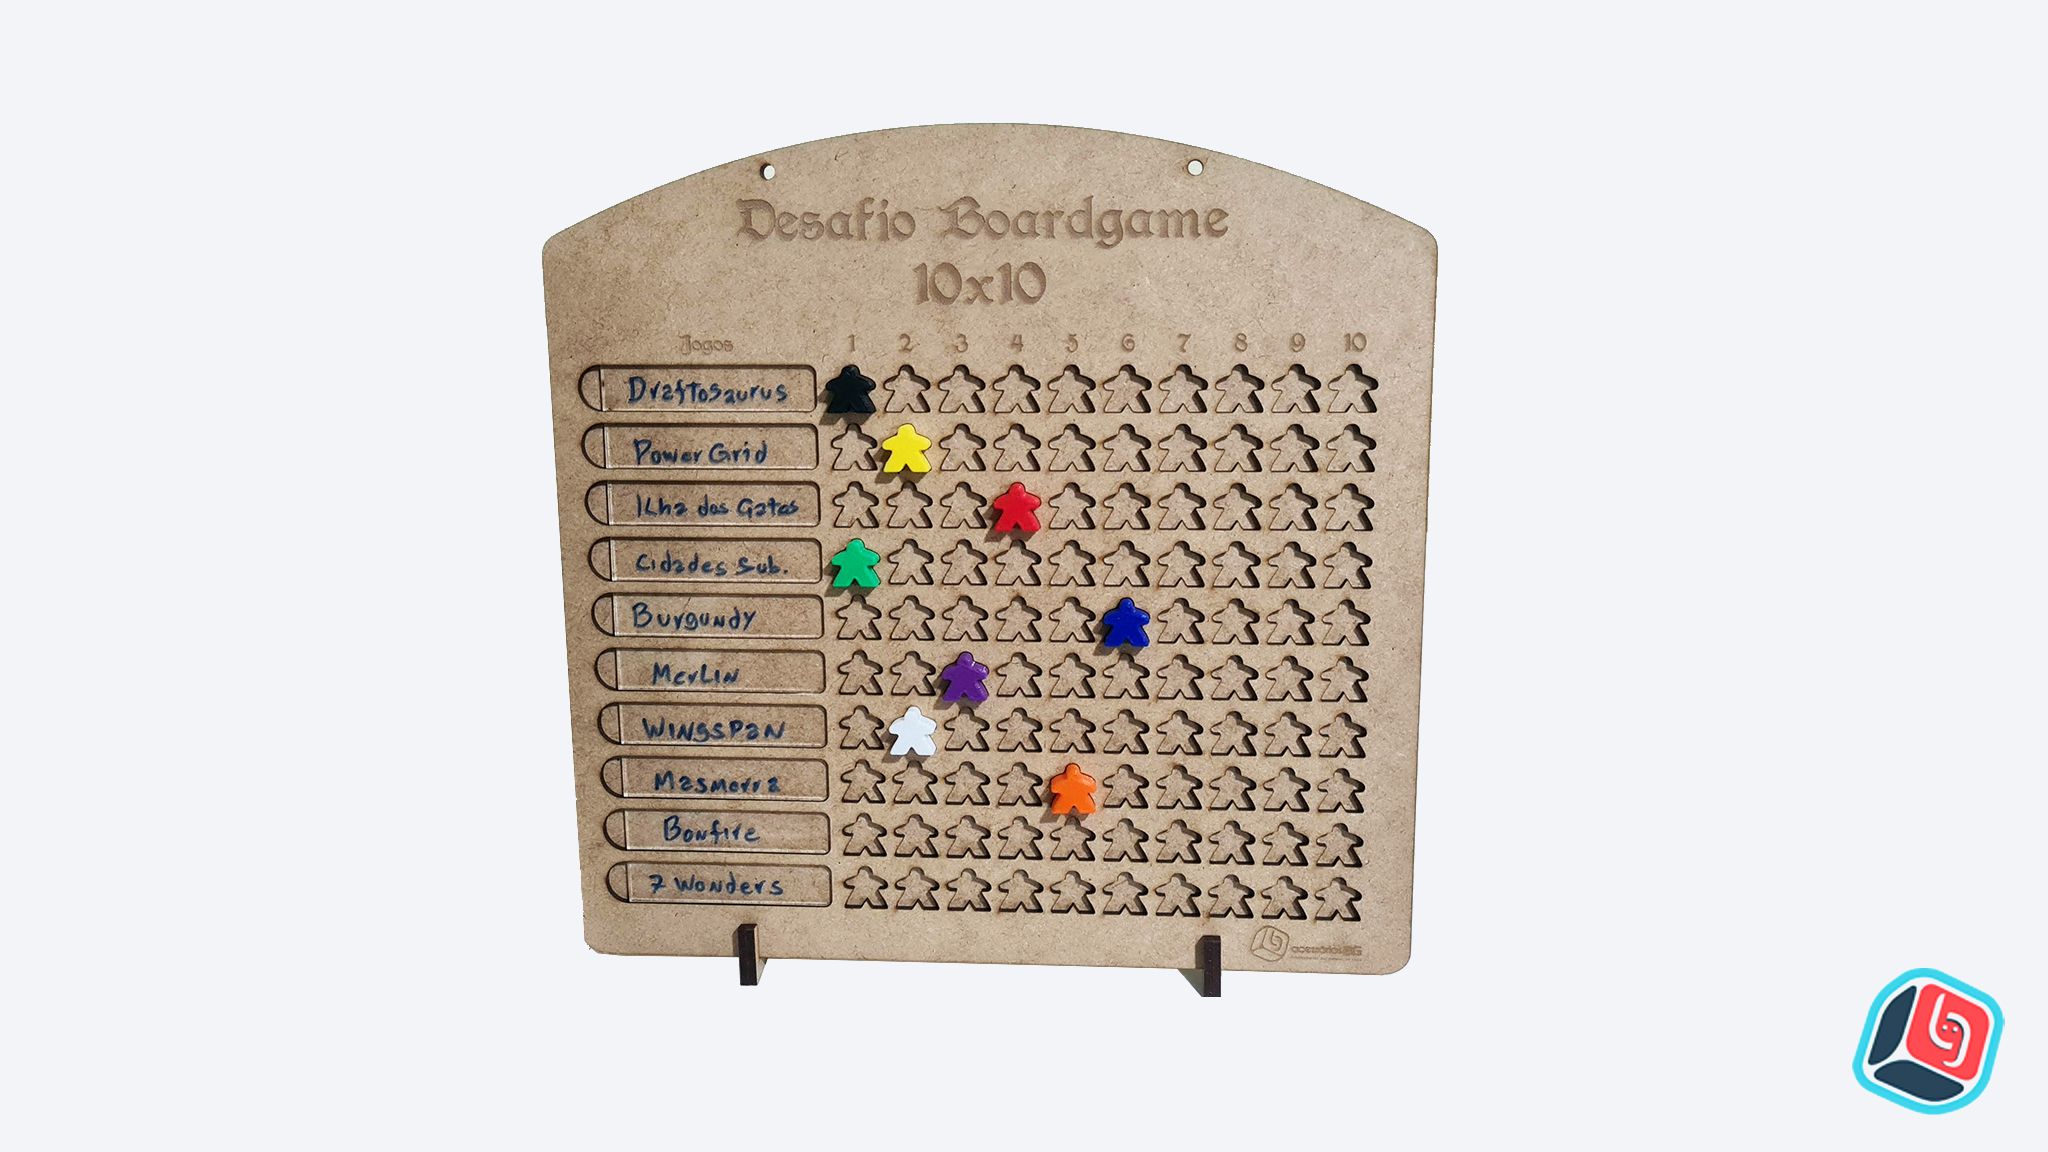 E aí, tem jogo? - A sua página sobre jogos de tabuleiro moderno.: Bloodborne  : The Card Game